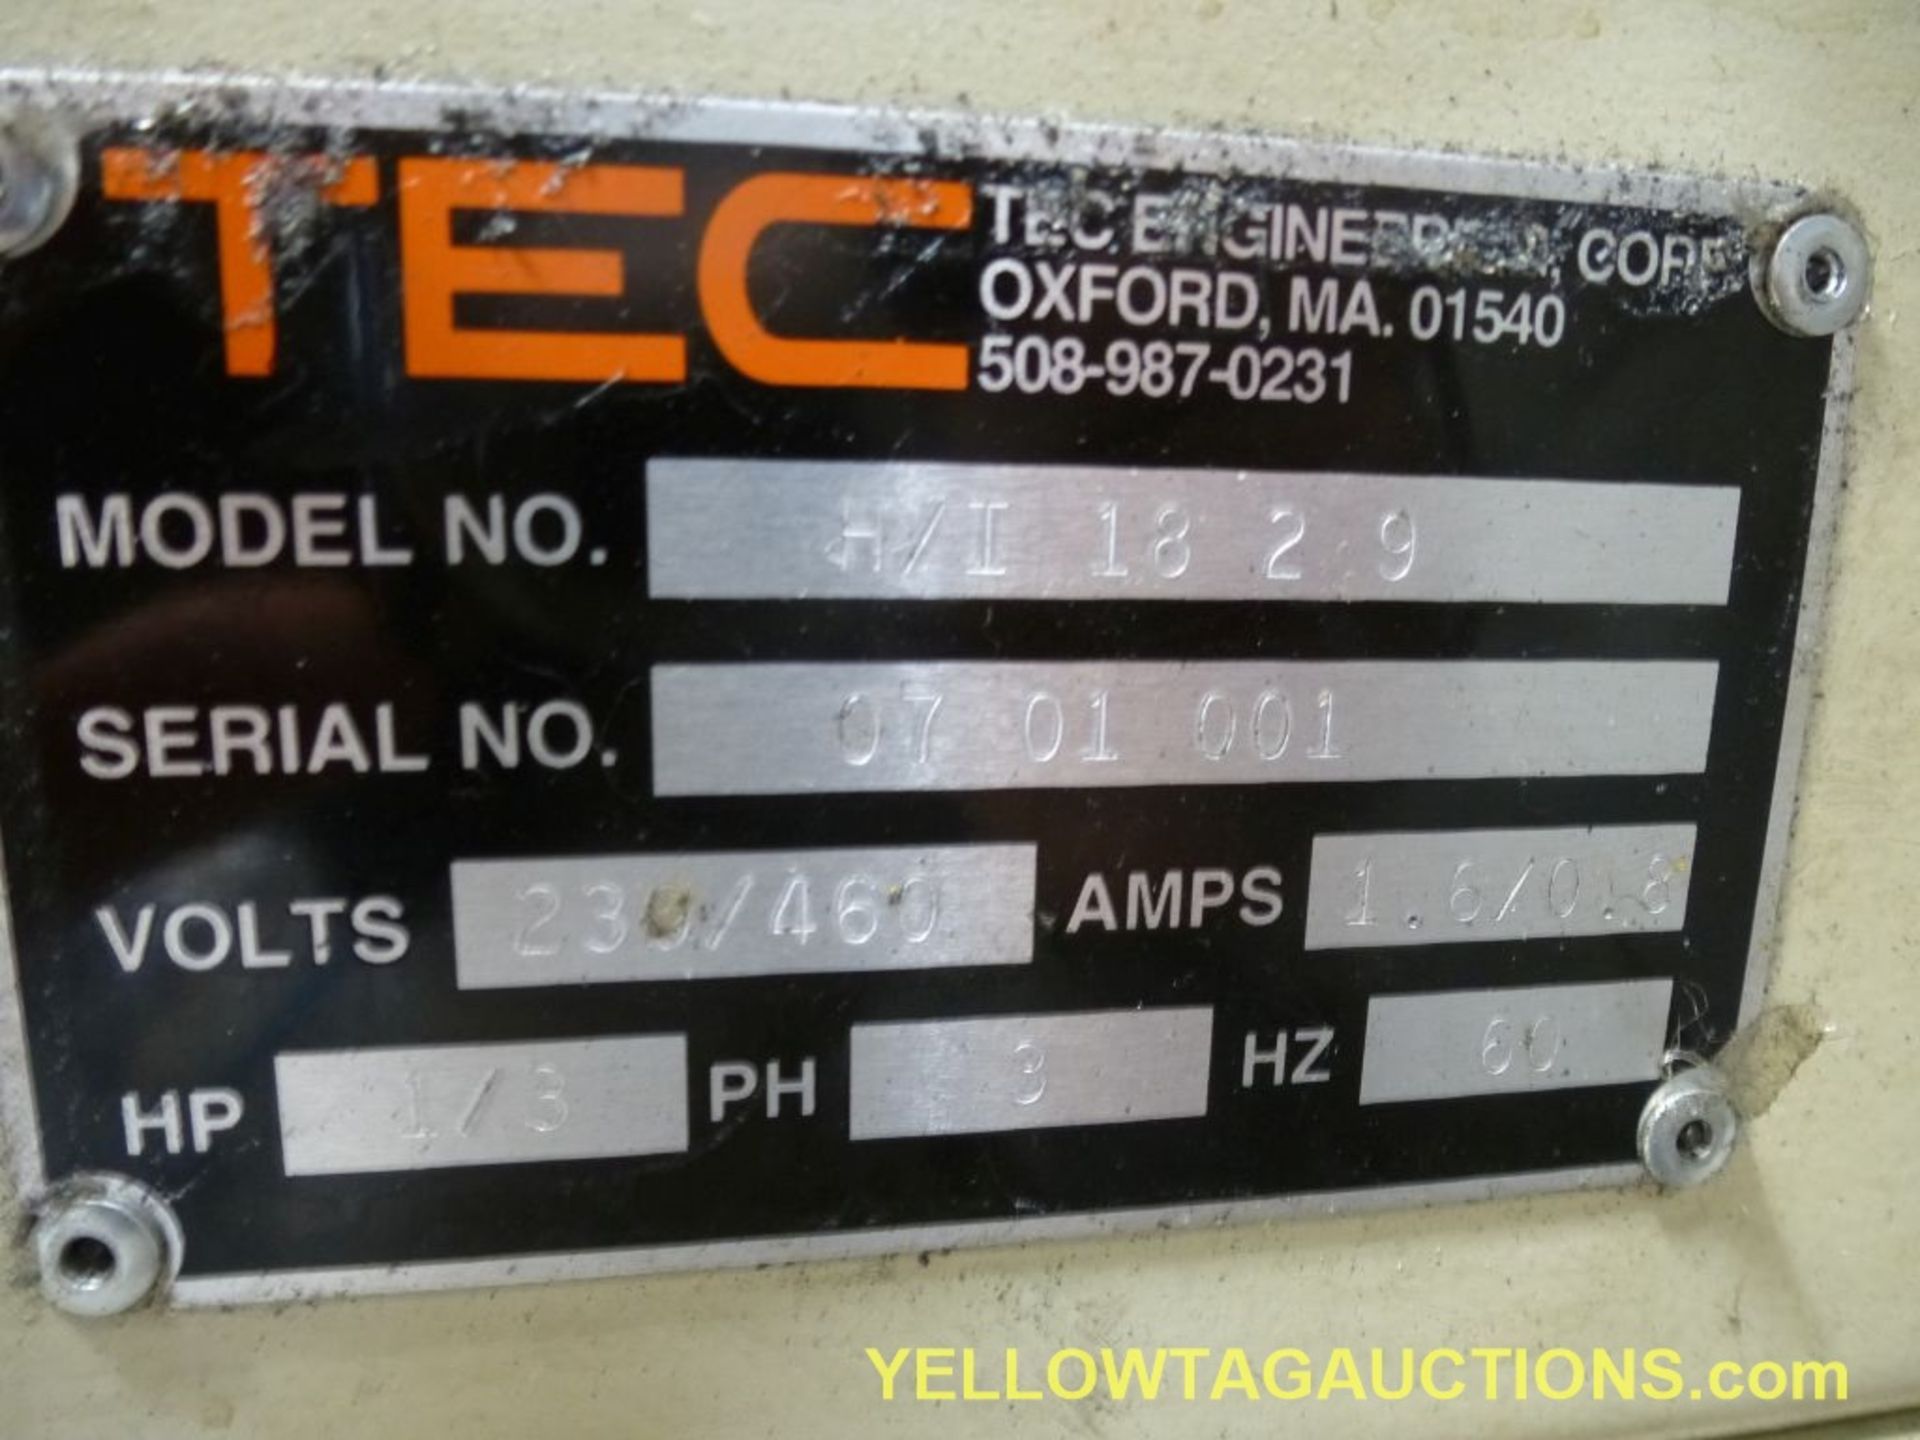 TEC Incline Conveyor|Model No. H/I 18 29; Serial No. 07 01 001; 230/460V; 1/3 HP; Length: 110"; - Image 14 of 15